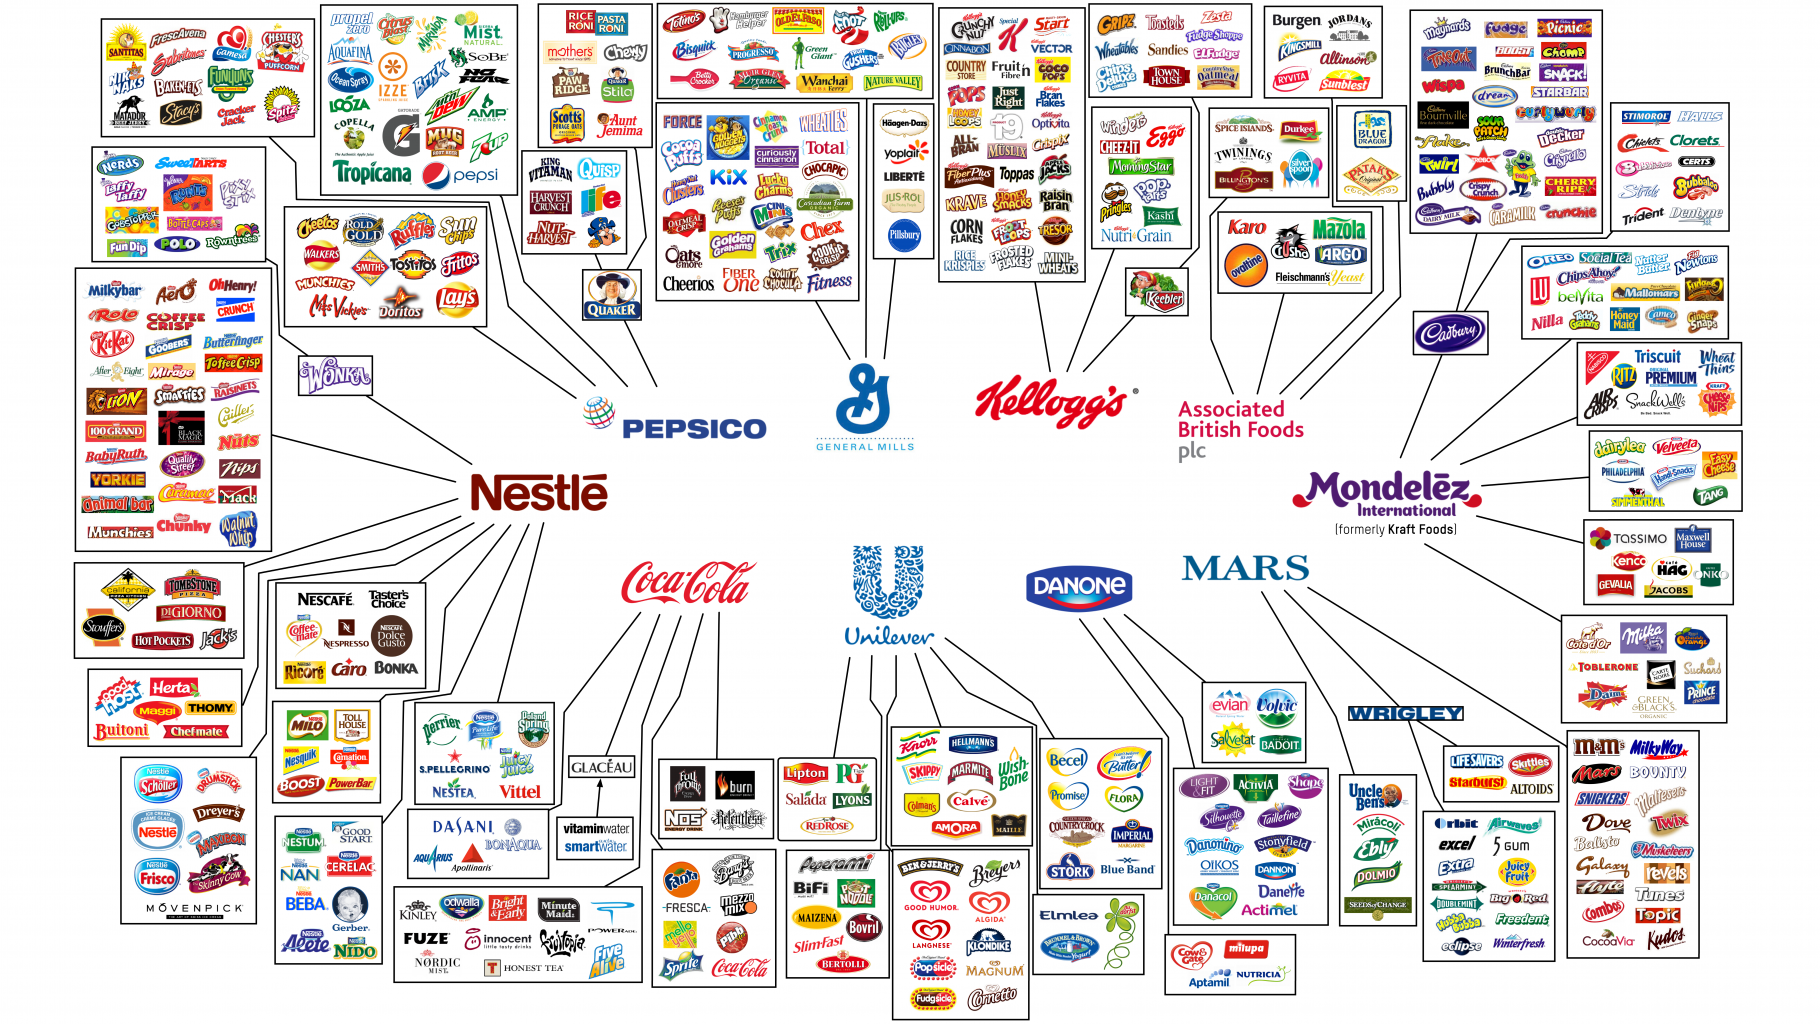 Zehn große Lebensmittelkonzerne besitzen viele der bekannten Lebensmittelmarken.